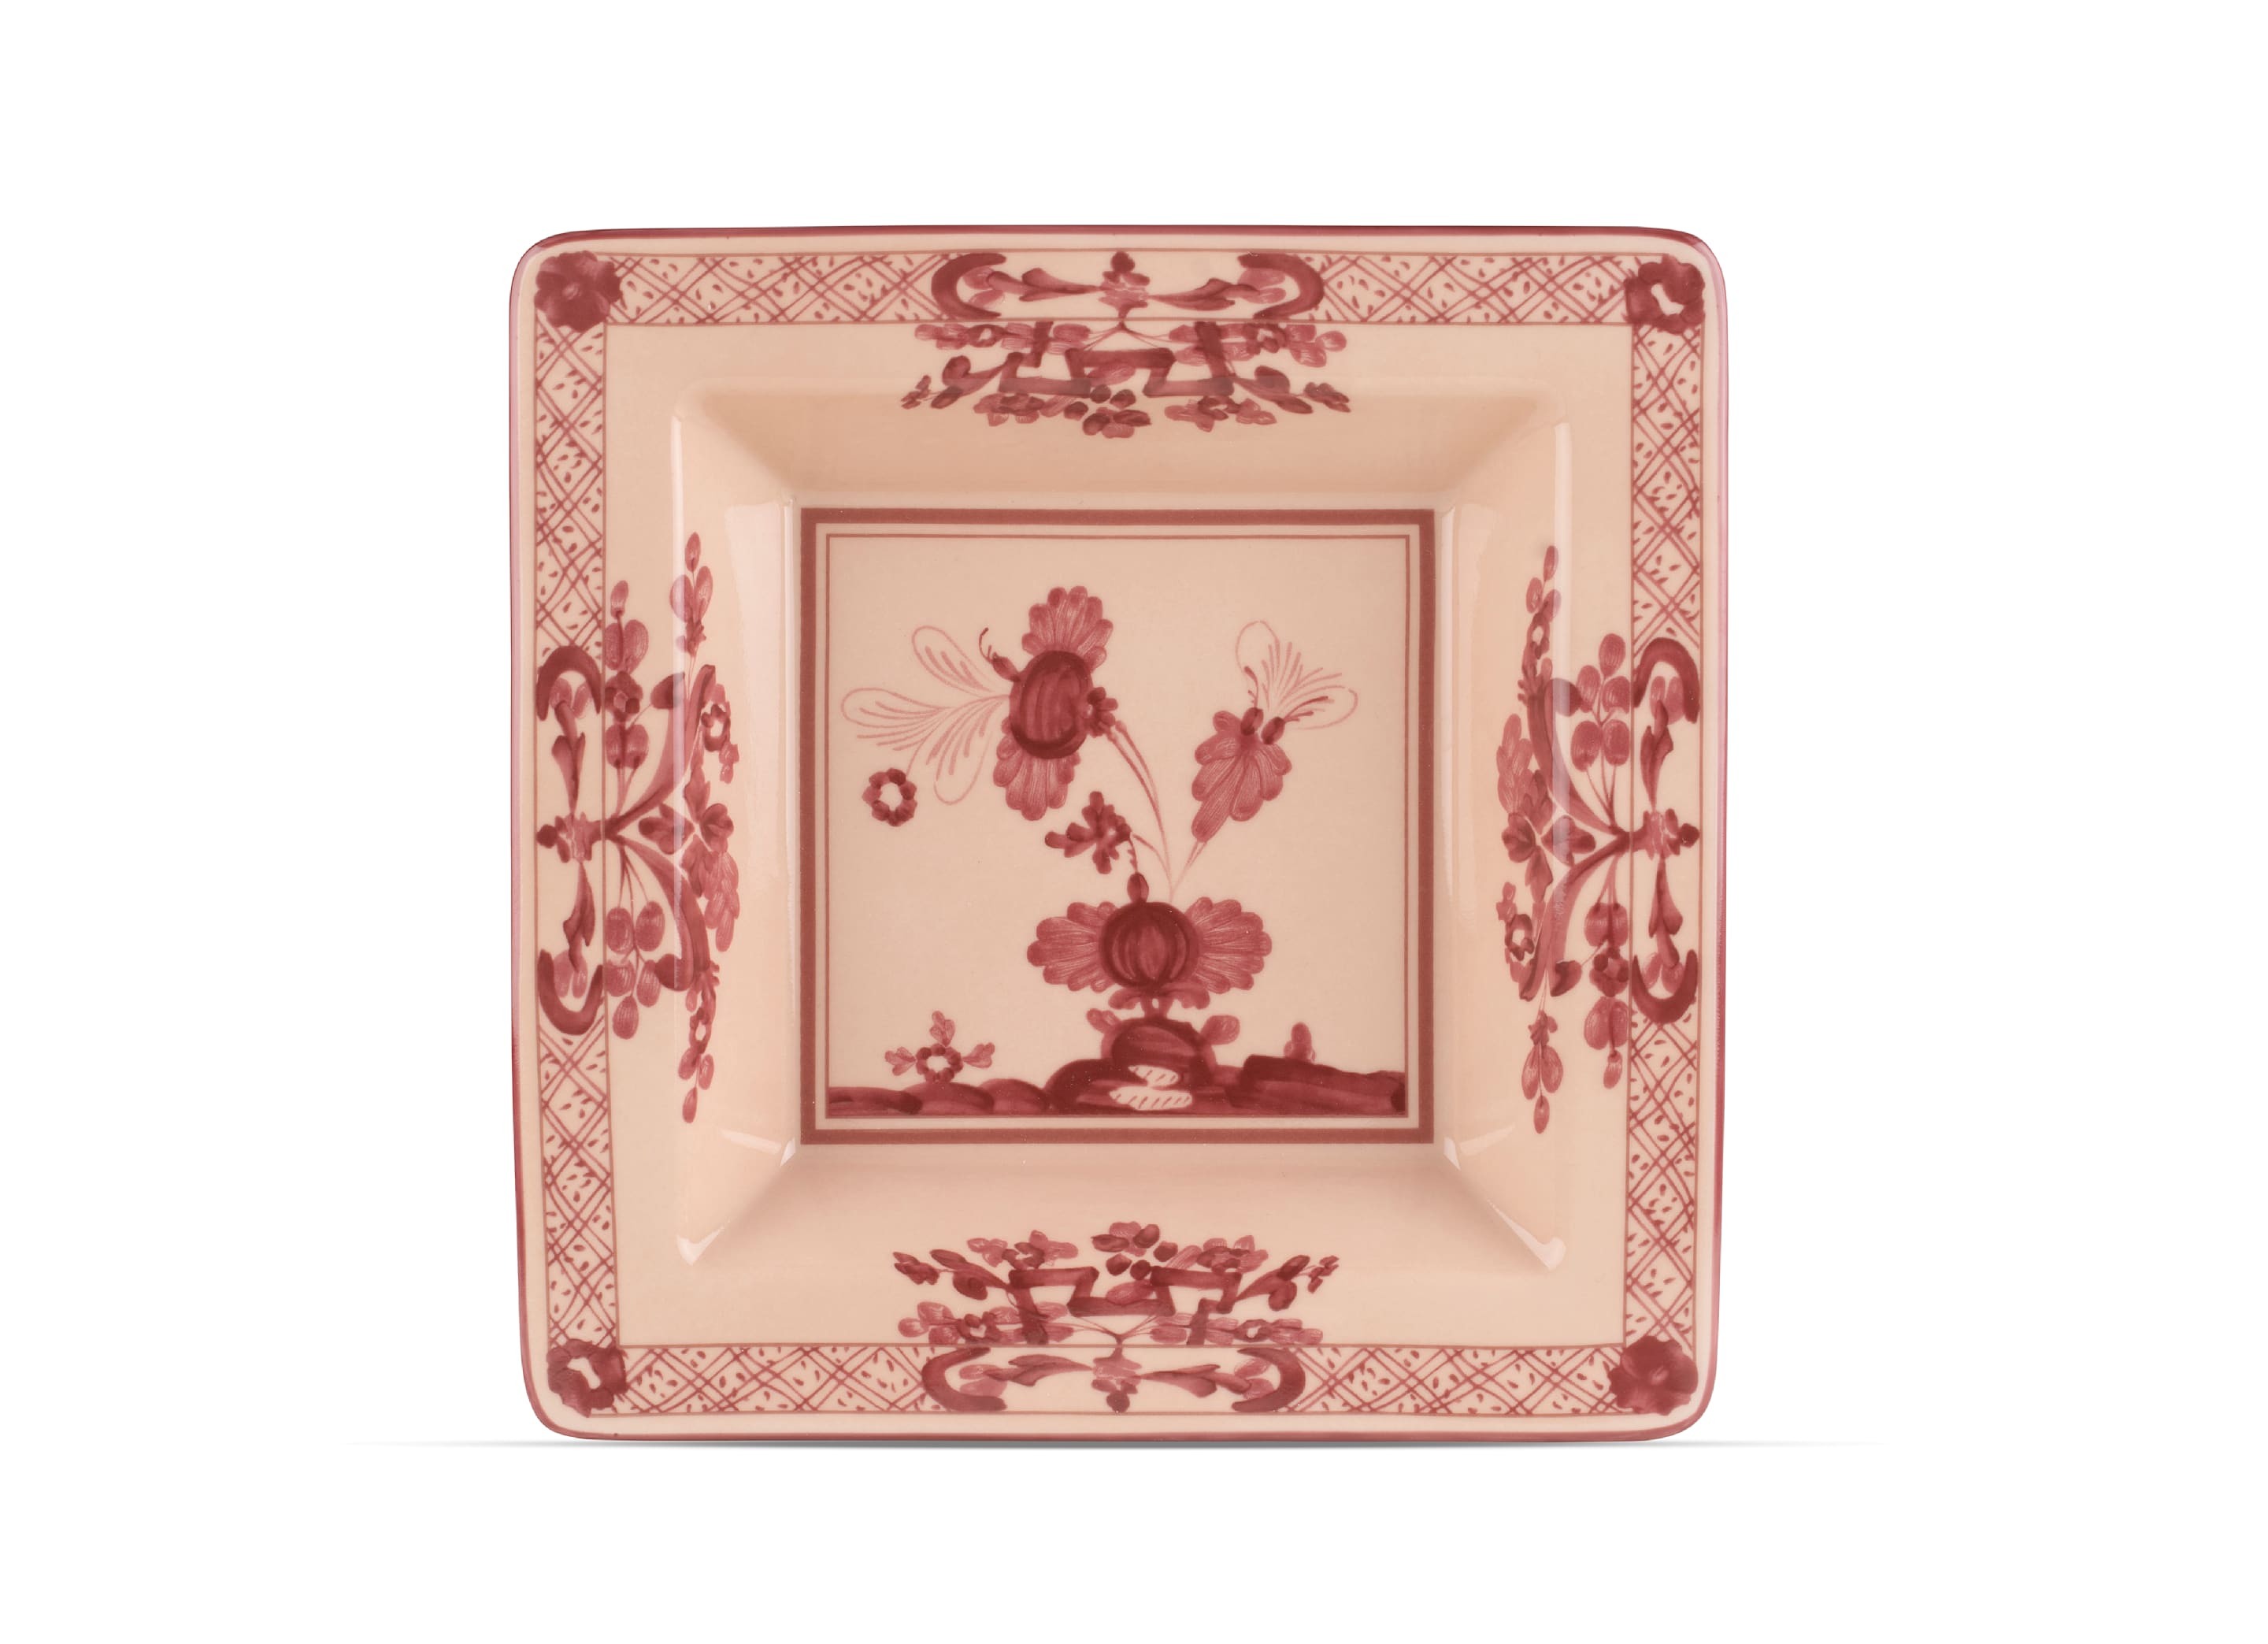 Vermilion-pink square porcelain vide poche | GINORI 1735